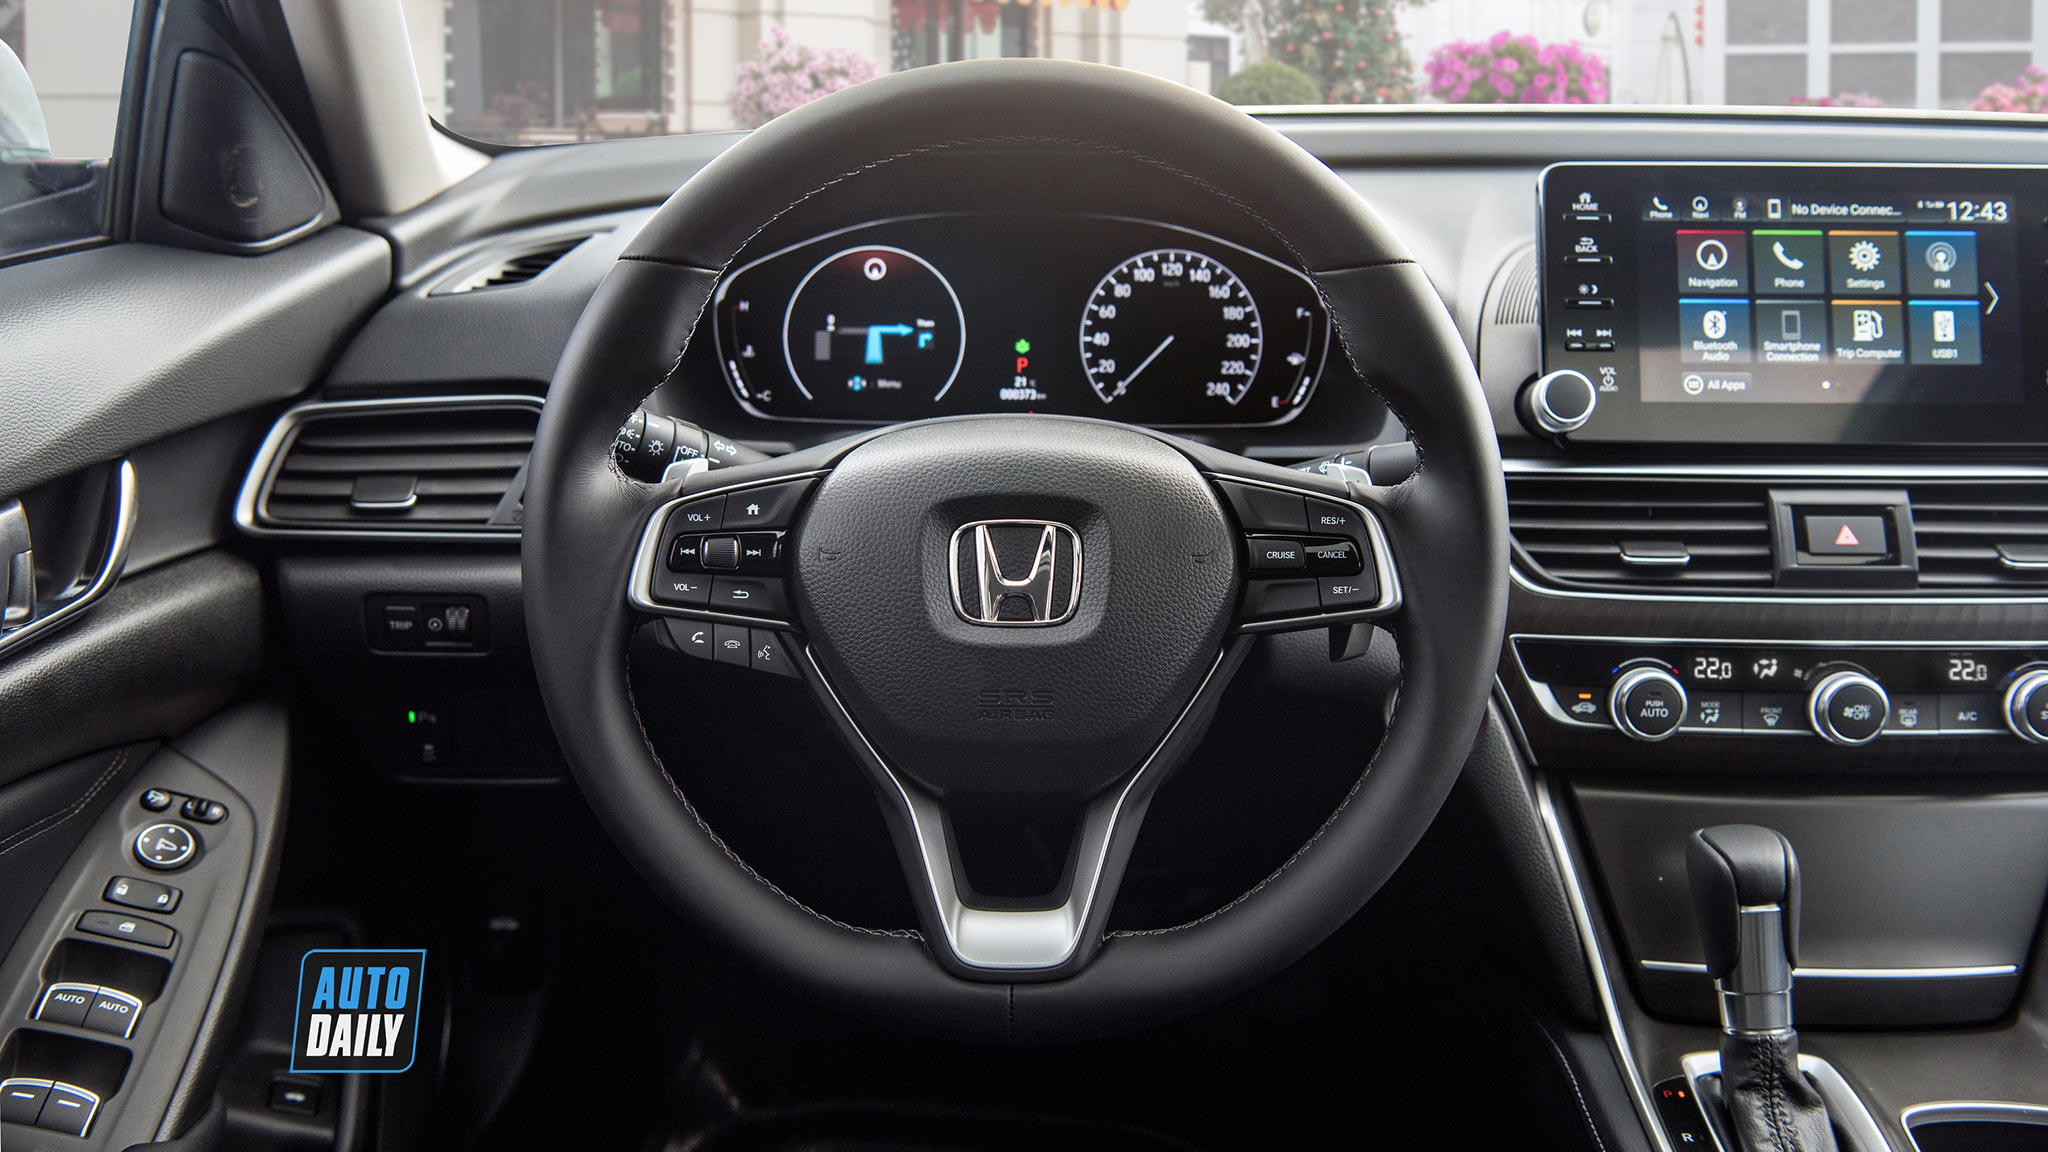 Honda Accord 2020 mới ra mắt có gì khác so với phiên bản 2019